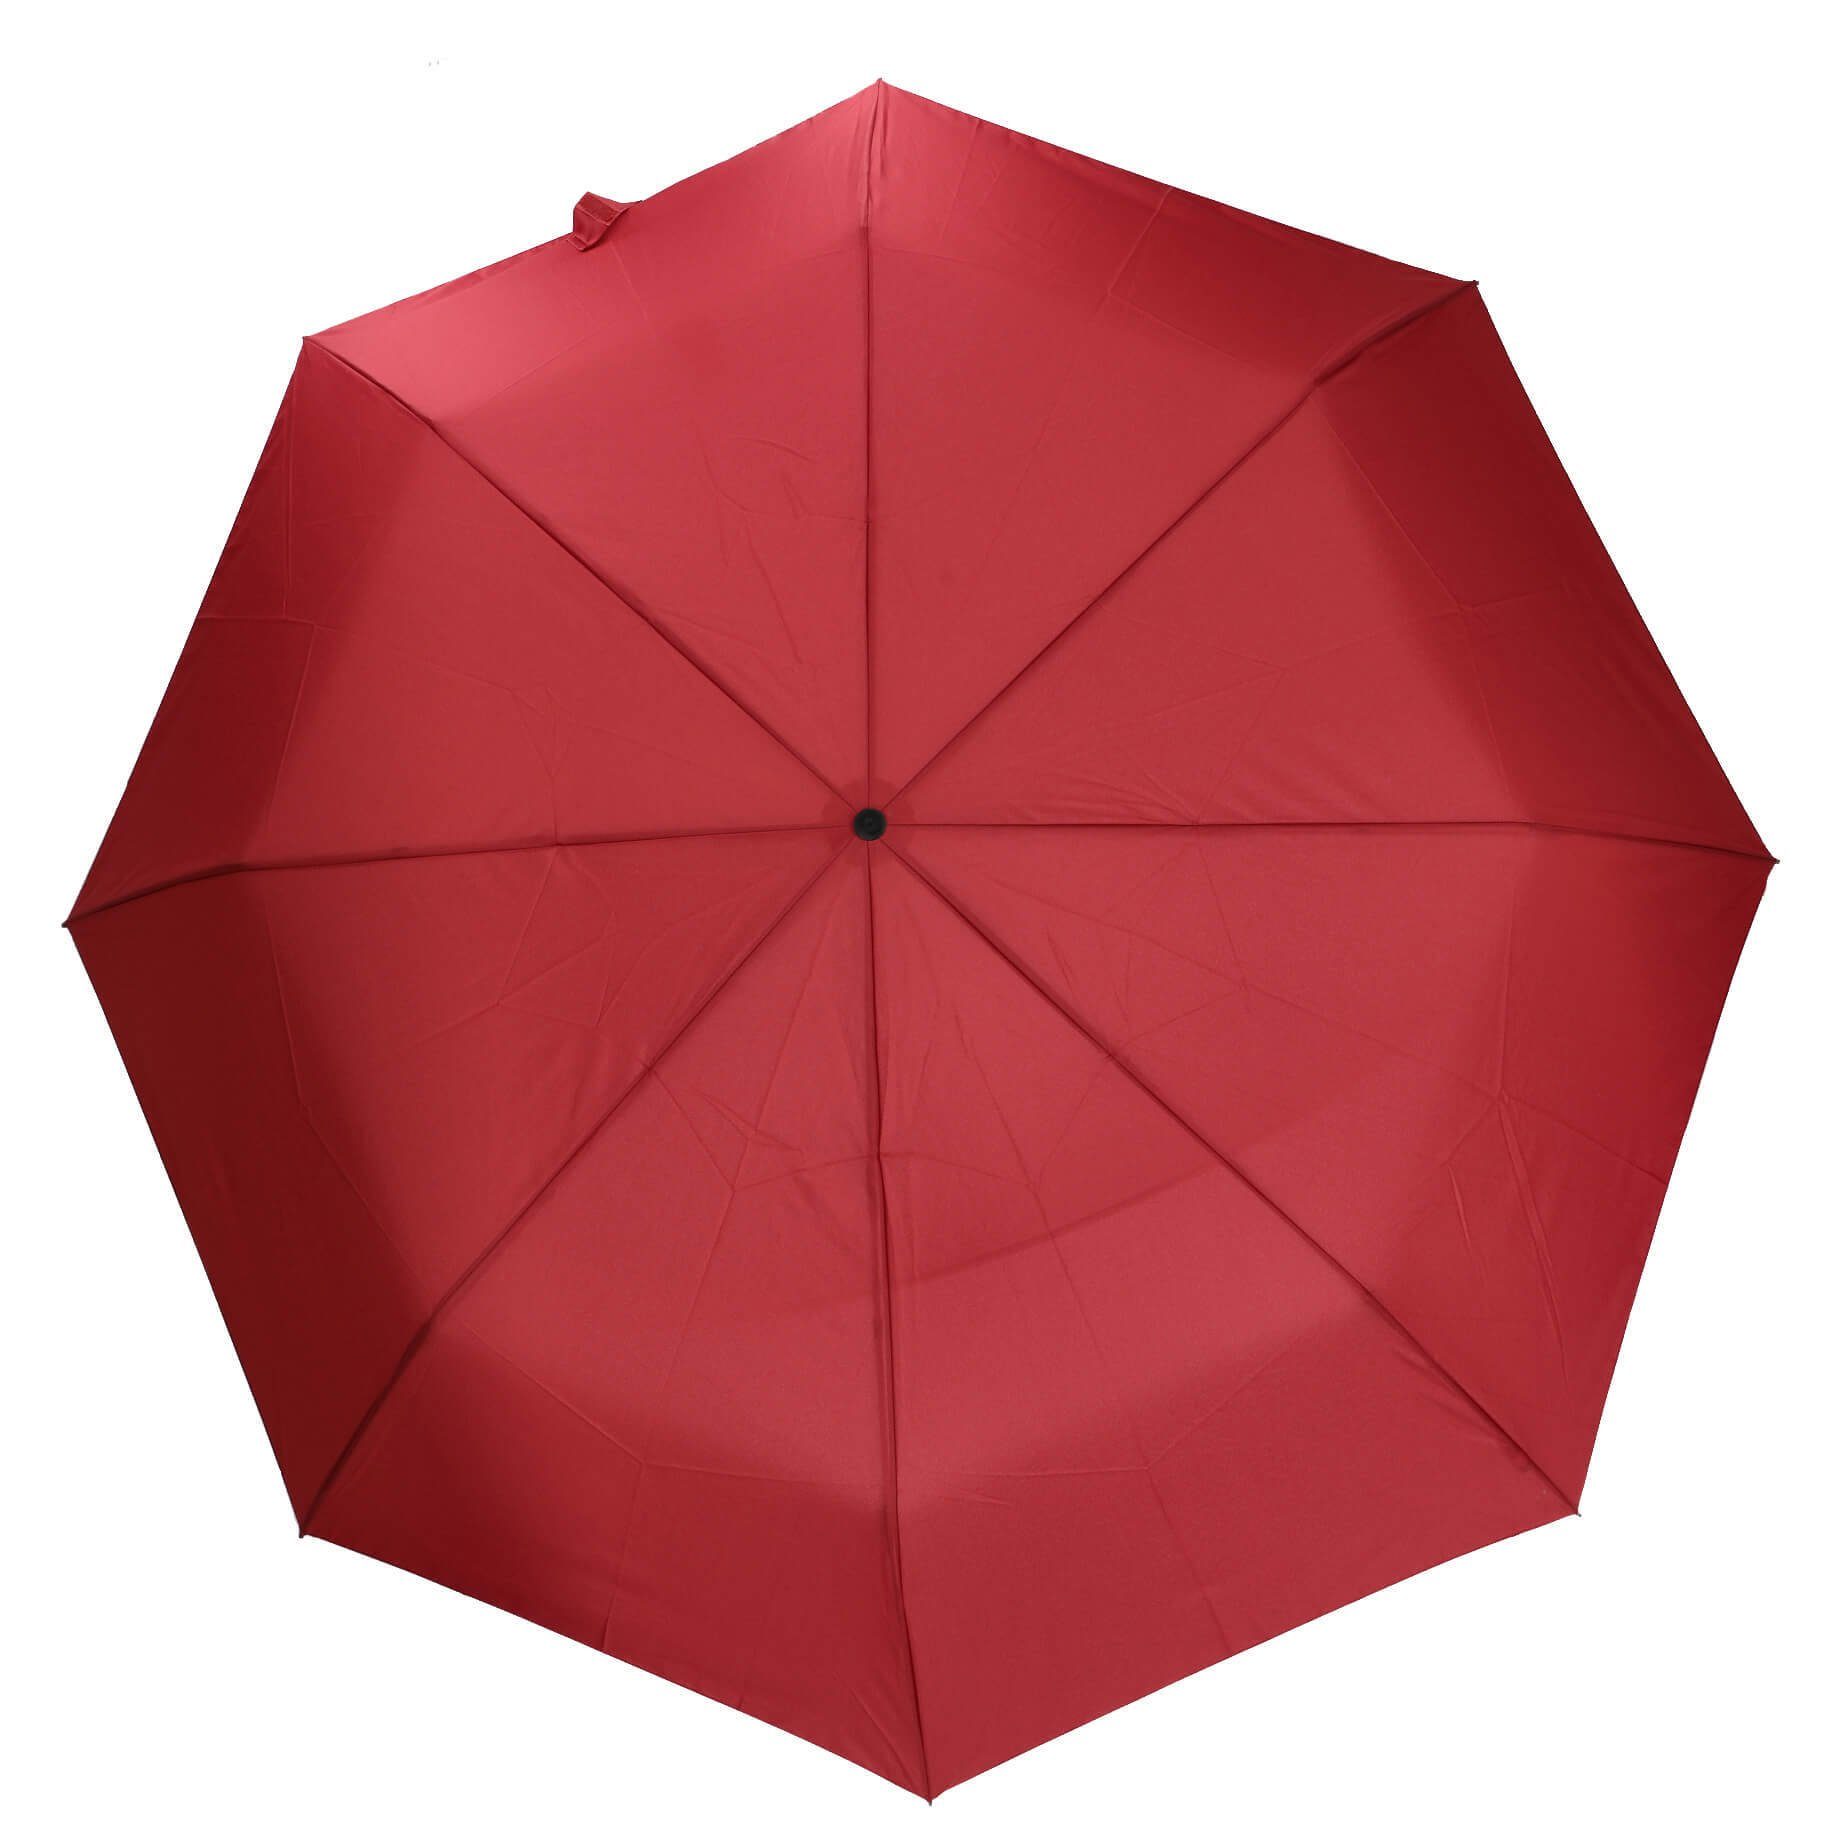 THE BRIDGE Taschenregenschirm Ombrelli - Regenschirm 115 cm red